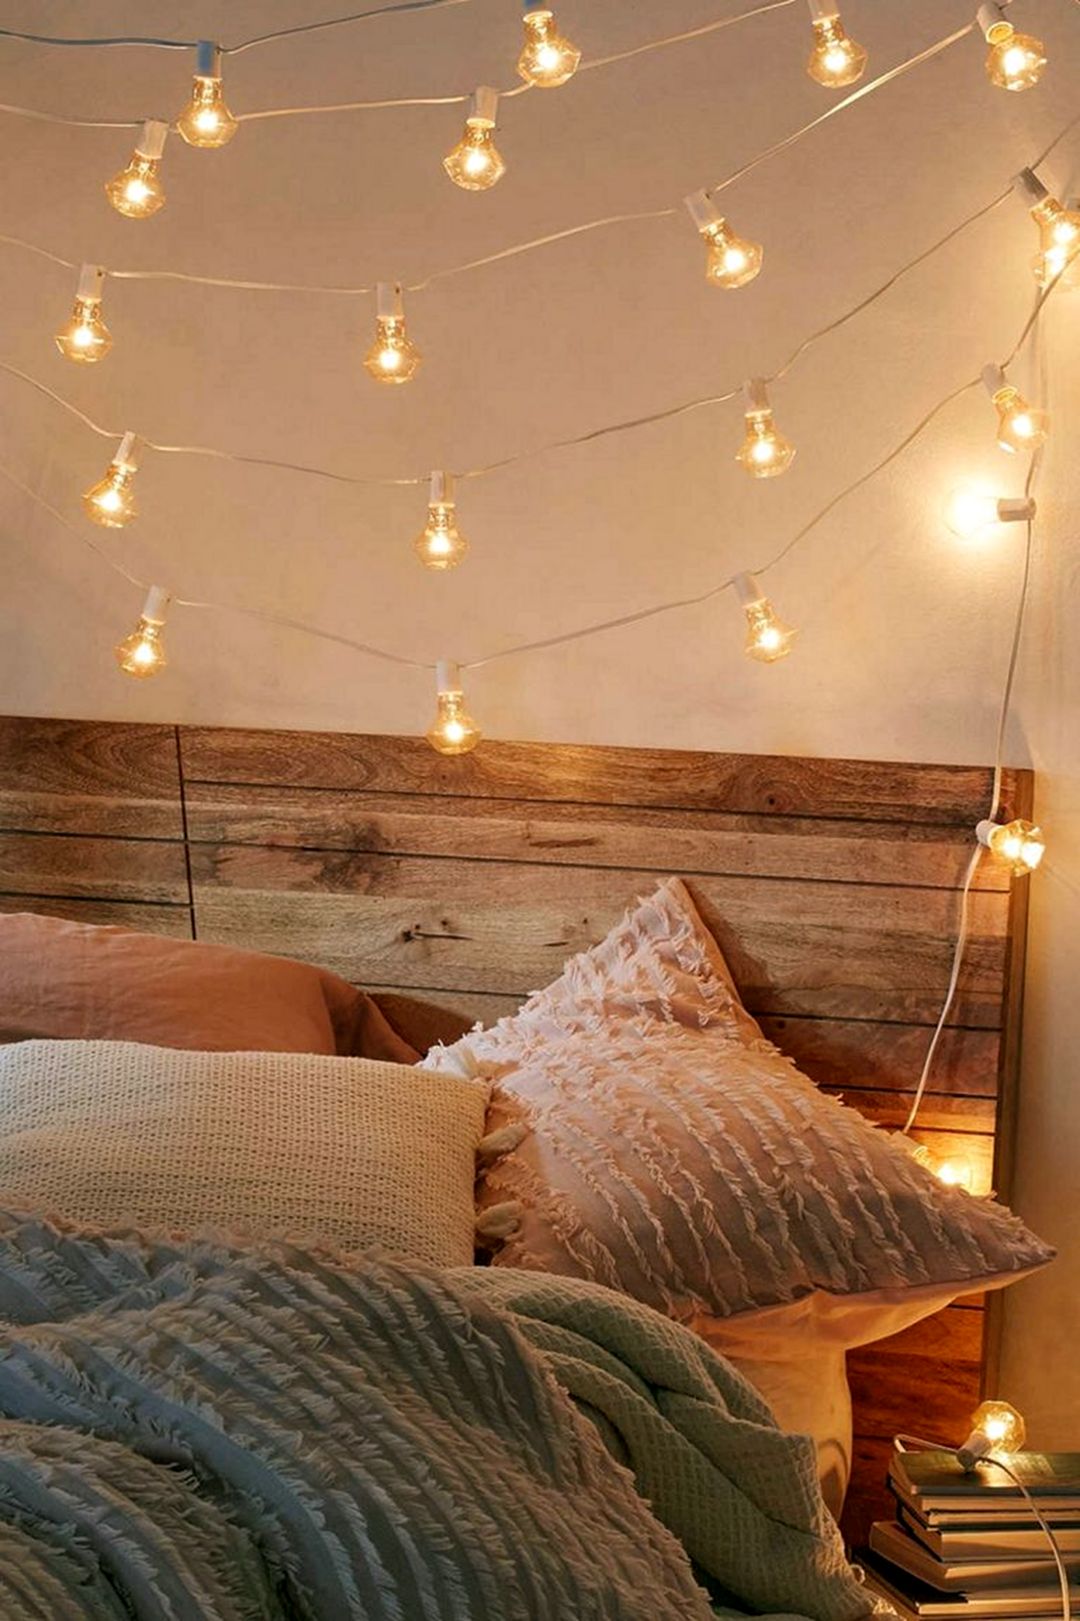 Impressive string lights for bedroom